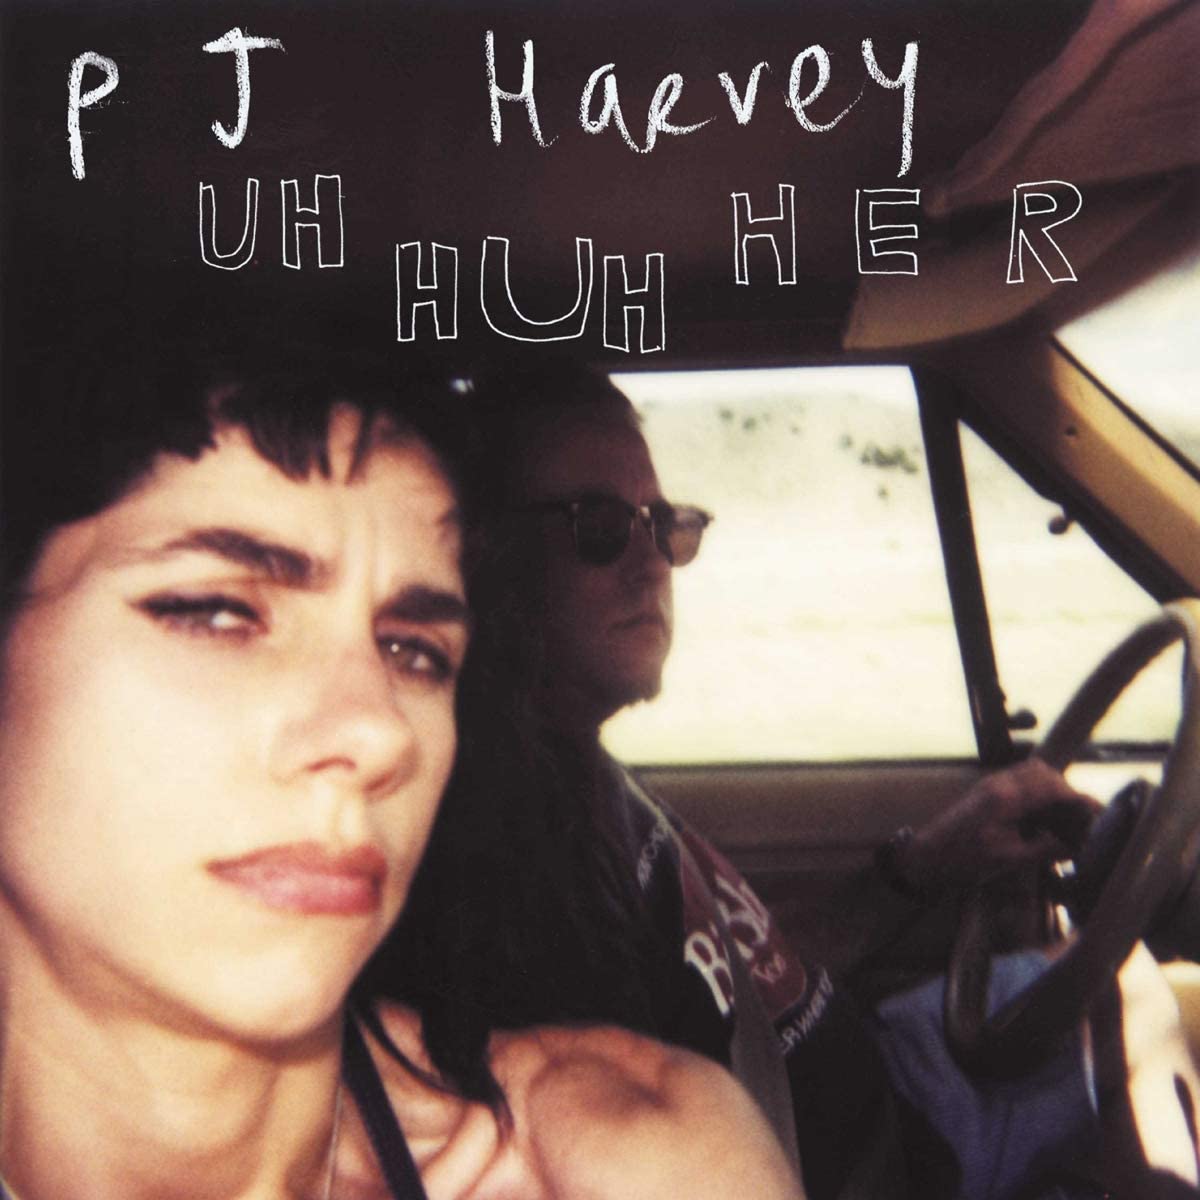 Copertina Vinile 33 giri Uh Huh Her di PJ Harvey